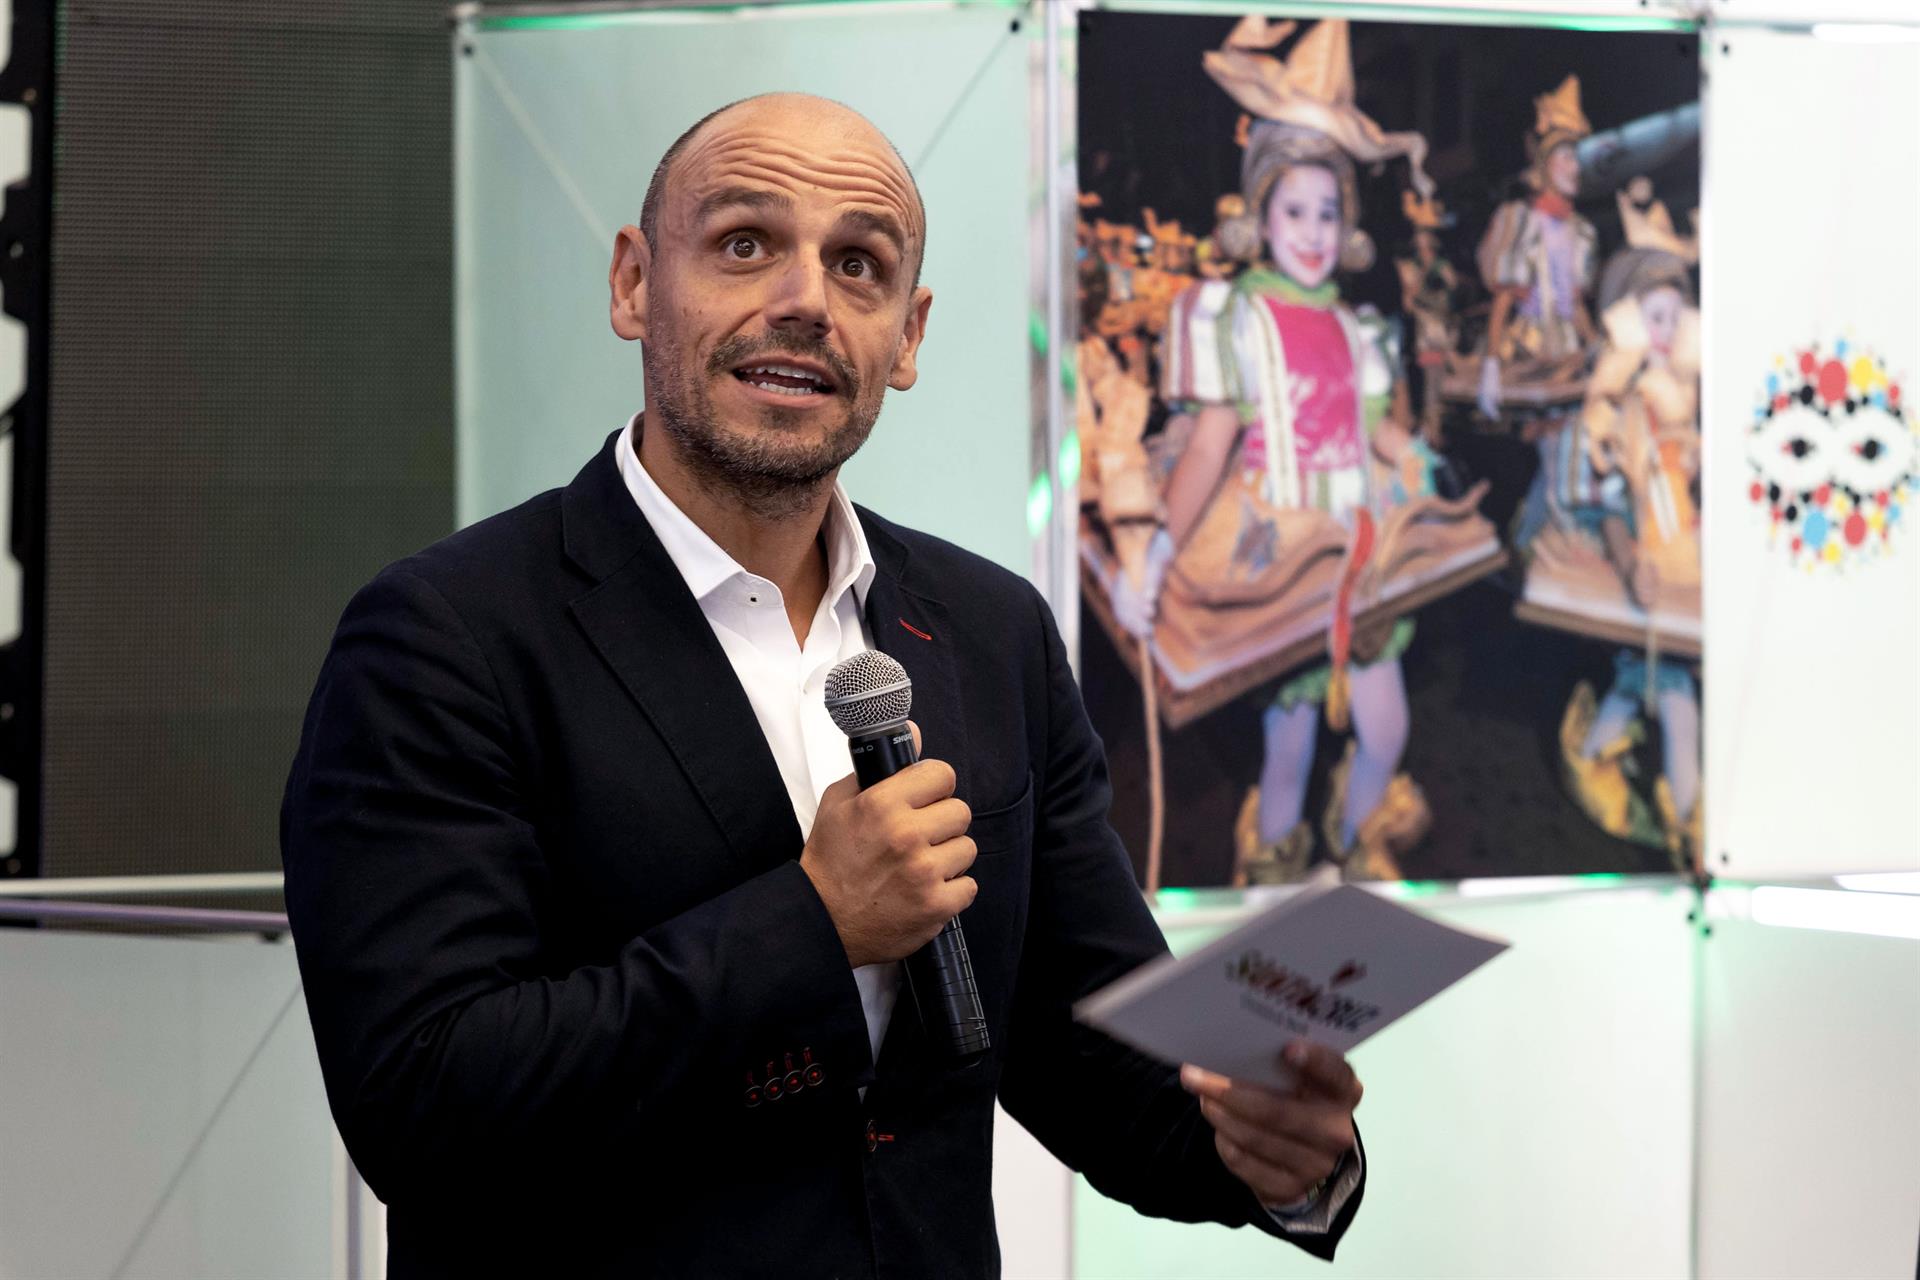 El presidente del Organismo Autónomo de Fiestas de Santa Cruz de Tenerife, Alfonso Cabello, presenta el escenario del Carnaval 2023. EFE/ Miguel Barreto